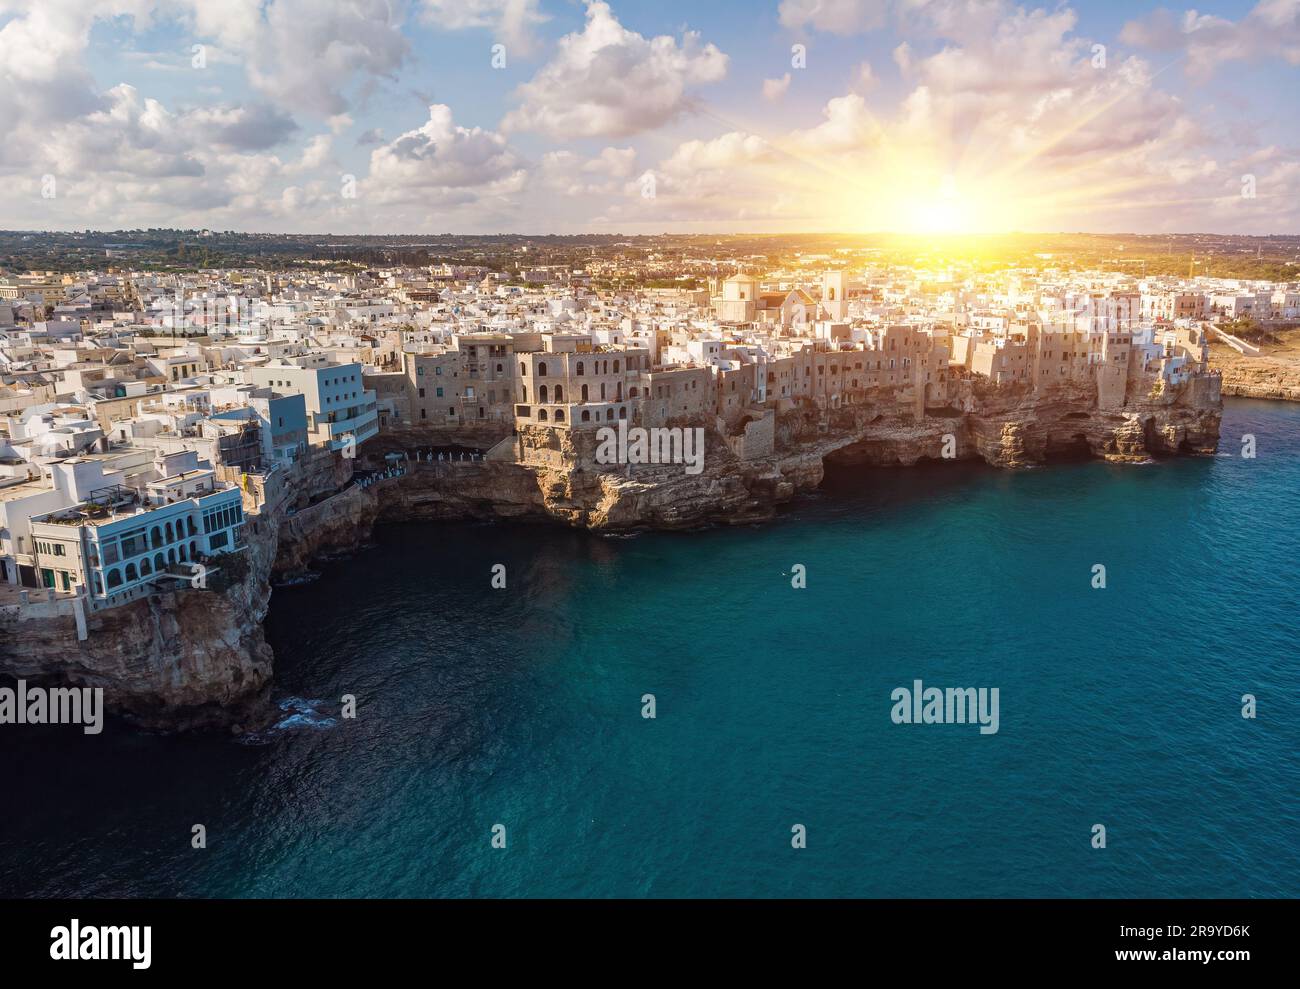 Veduta aerea di Polignano a Mare, un paese costruito sul bordo delle  scogliere di arenaria sopra il mare Adriatico in Puglia, Italia. Fotografia  del drone di Lam Foto stock - Alamy